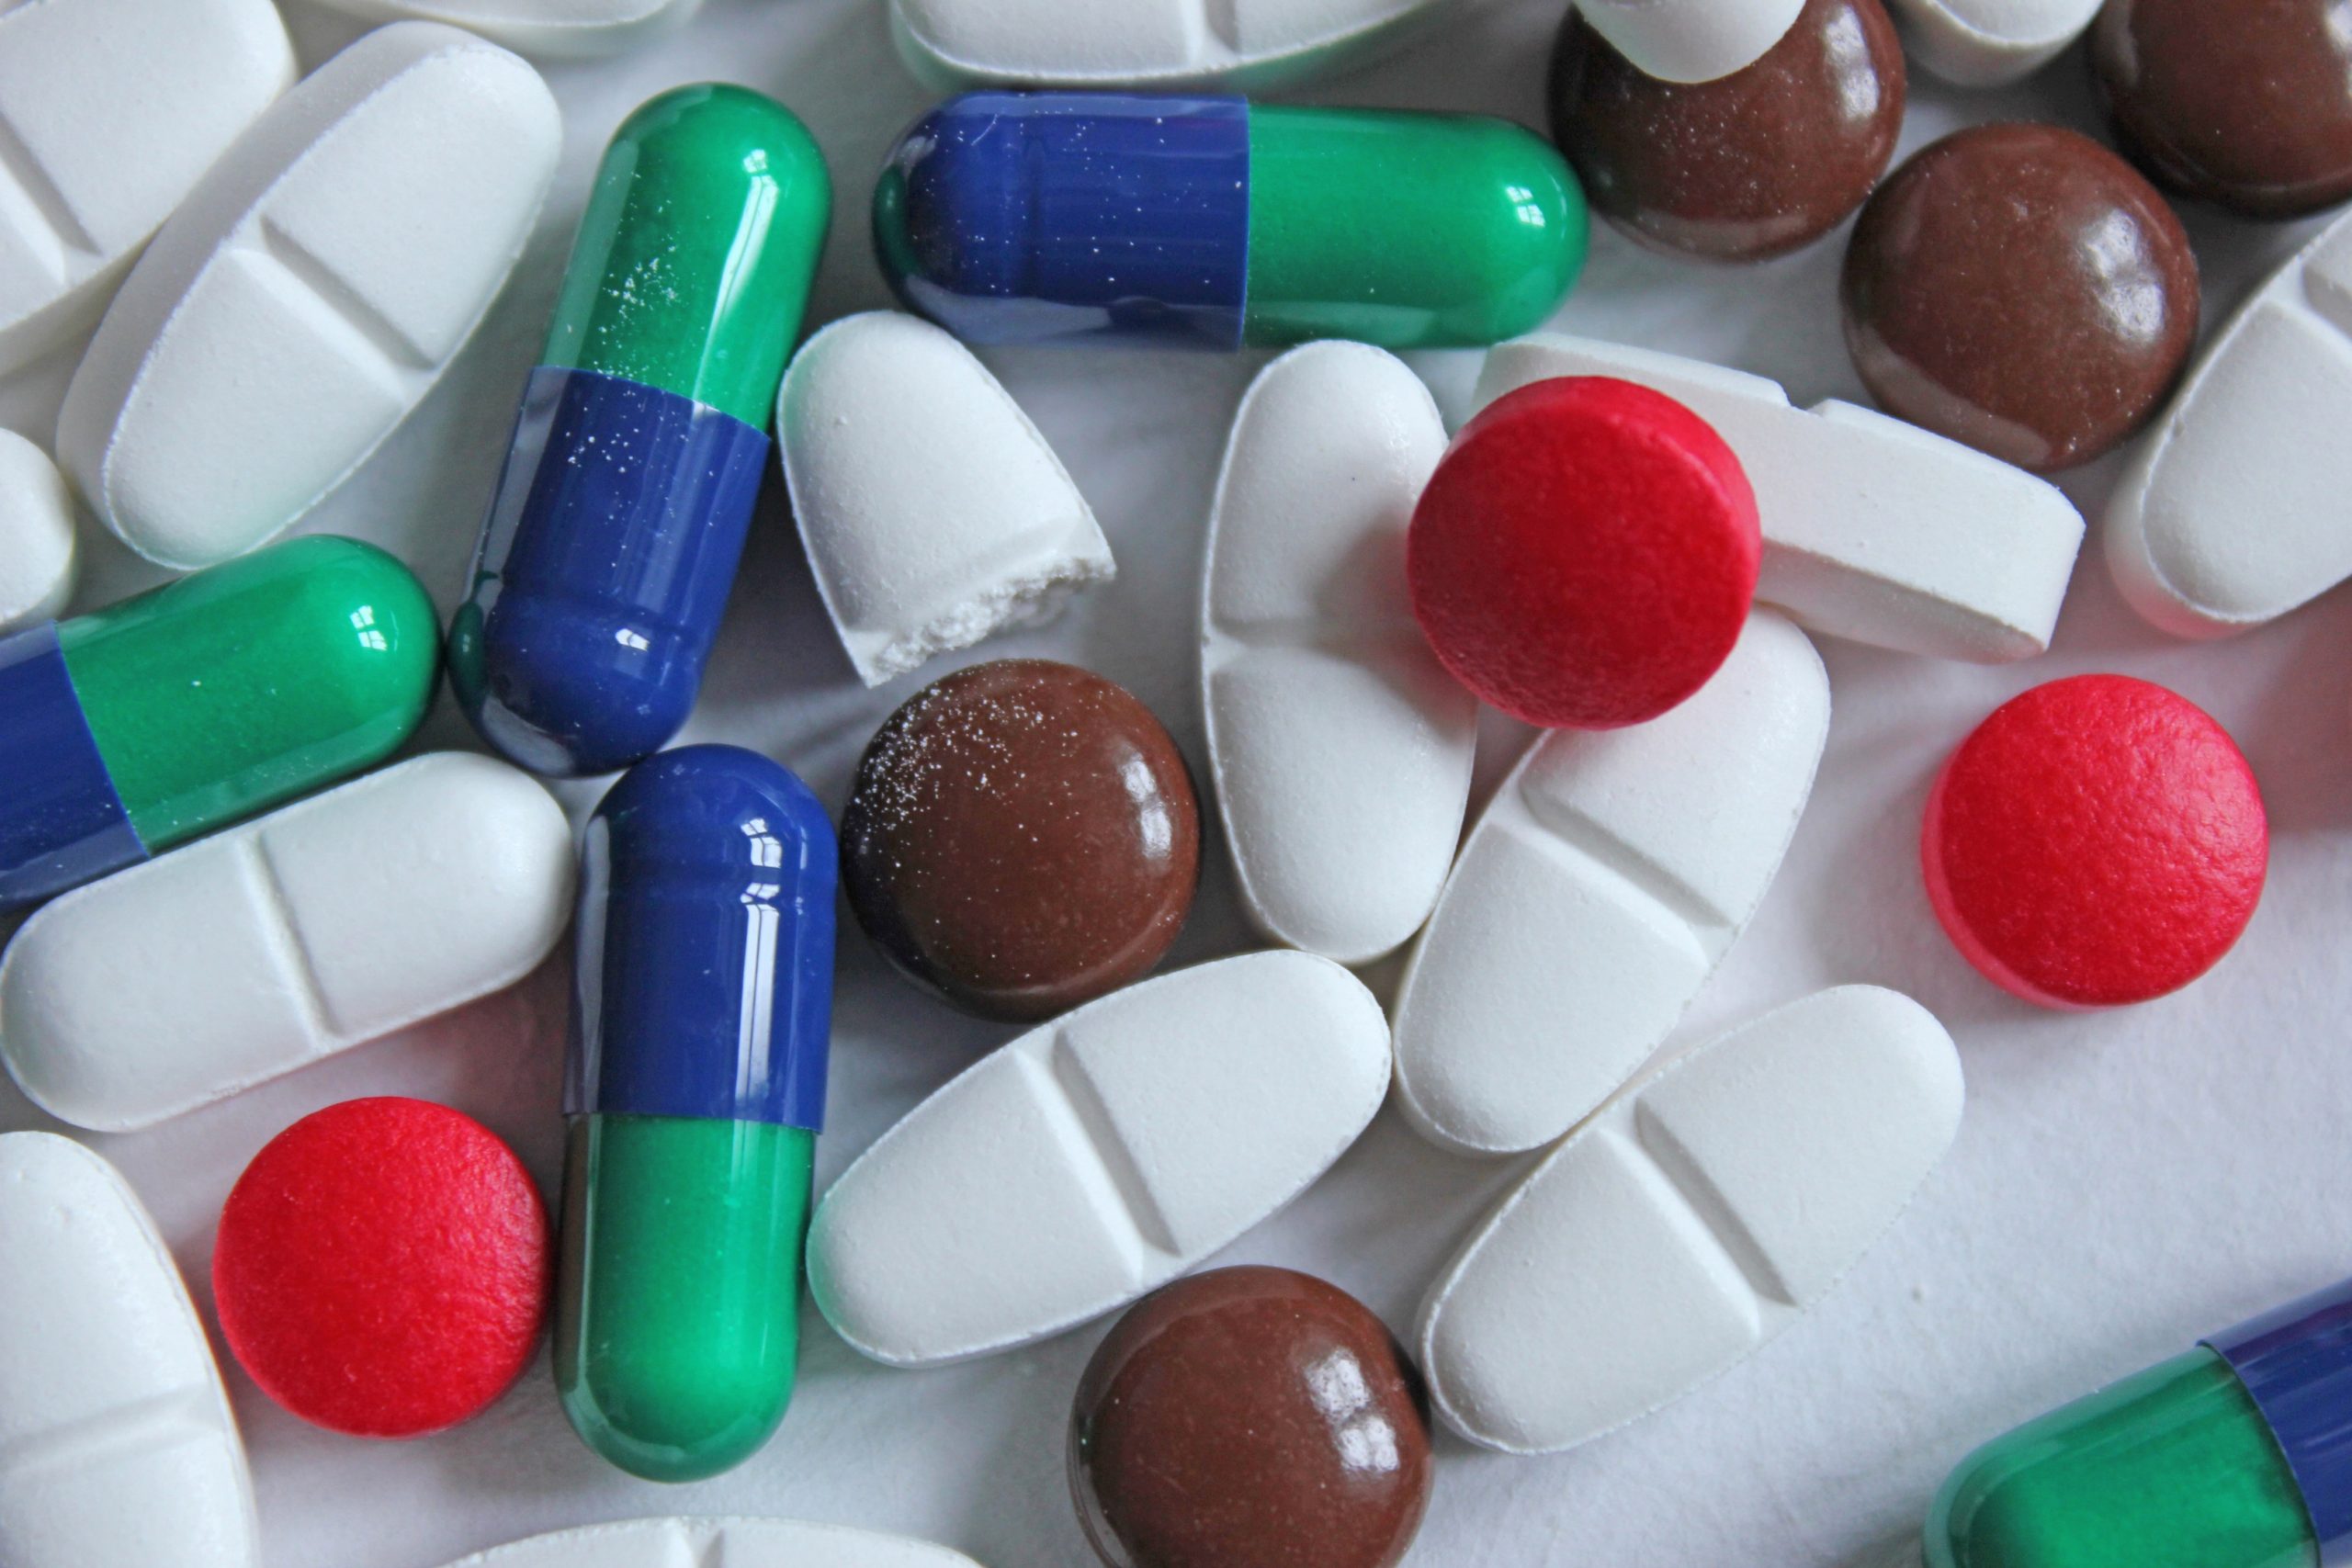 Pharmacy pills